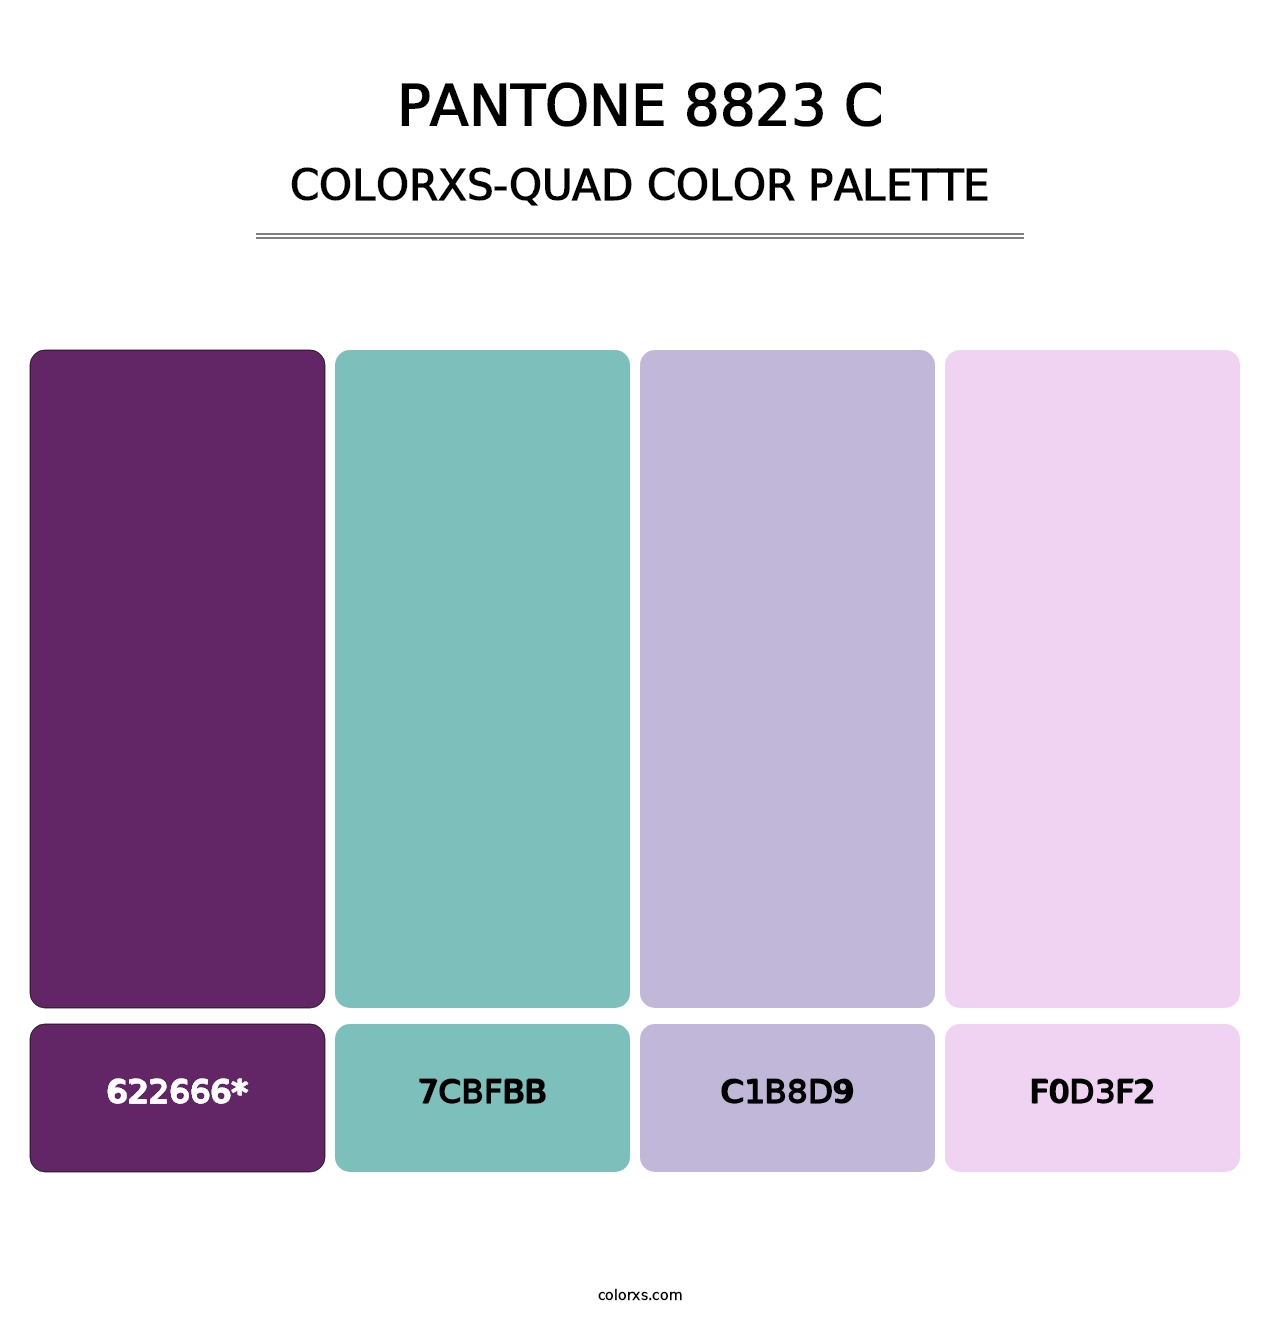 PANTONE 8823 C - Colorxs Quad Palette